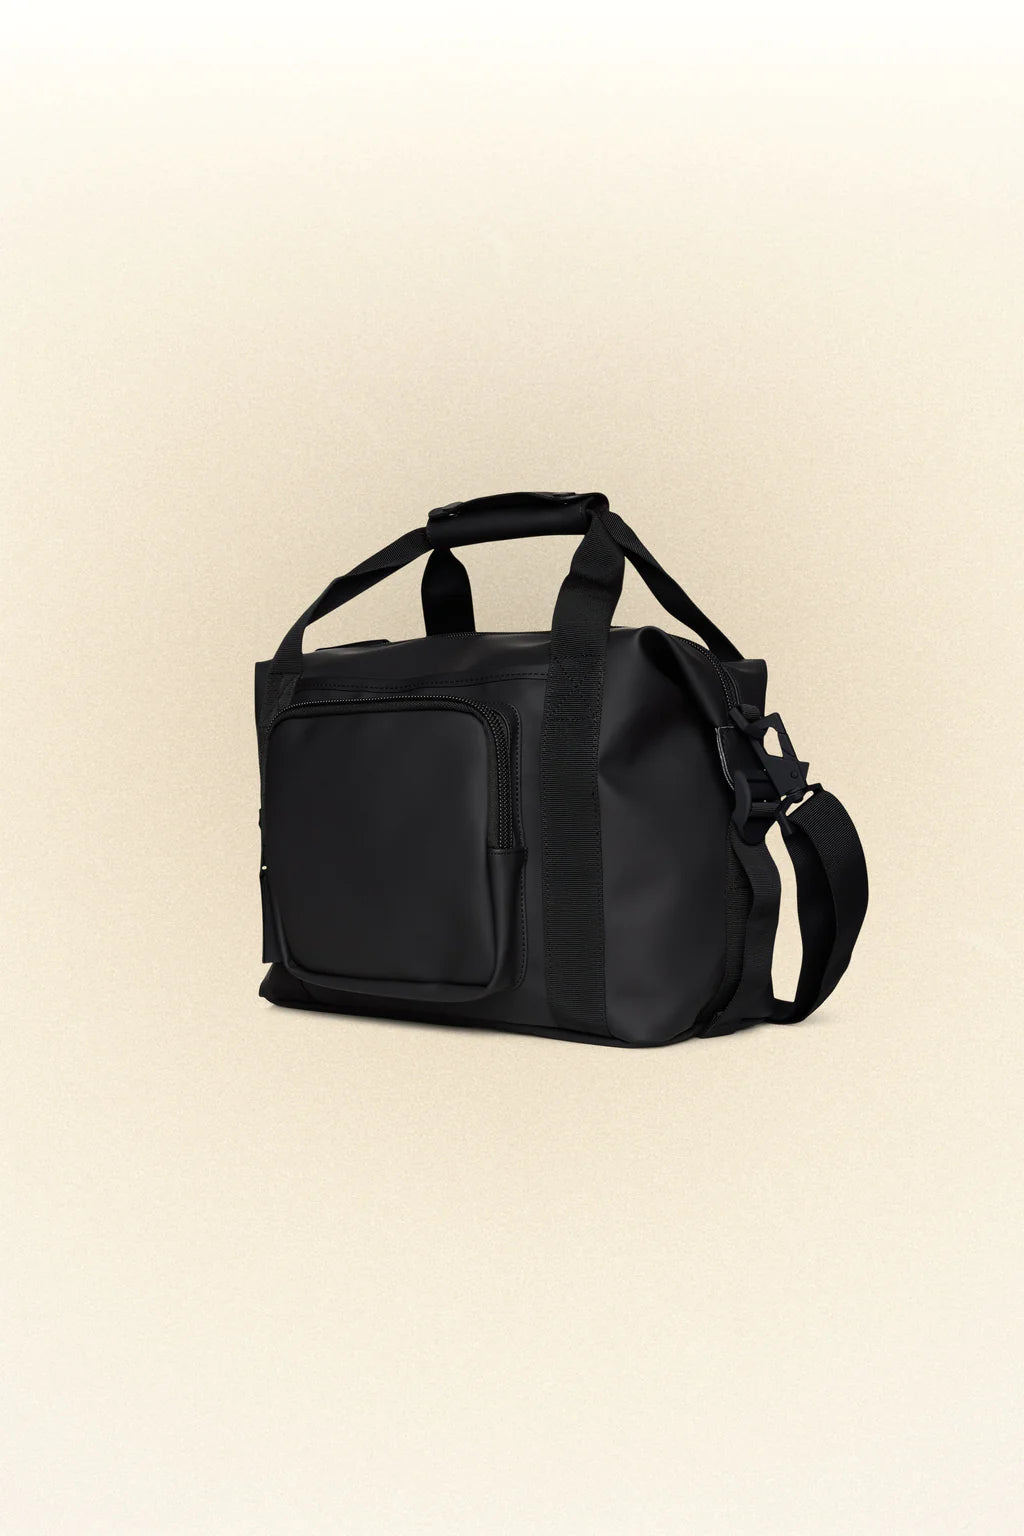 14230 - Texel Kit Bag.